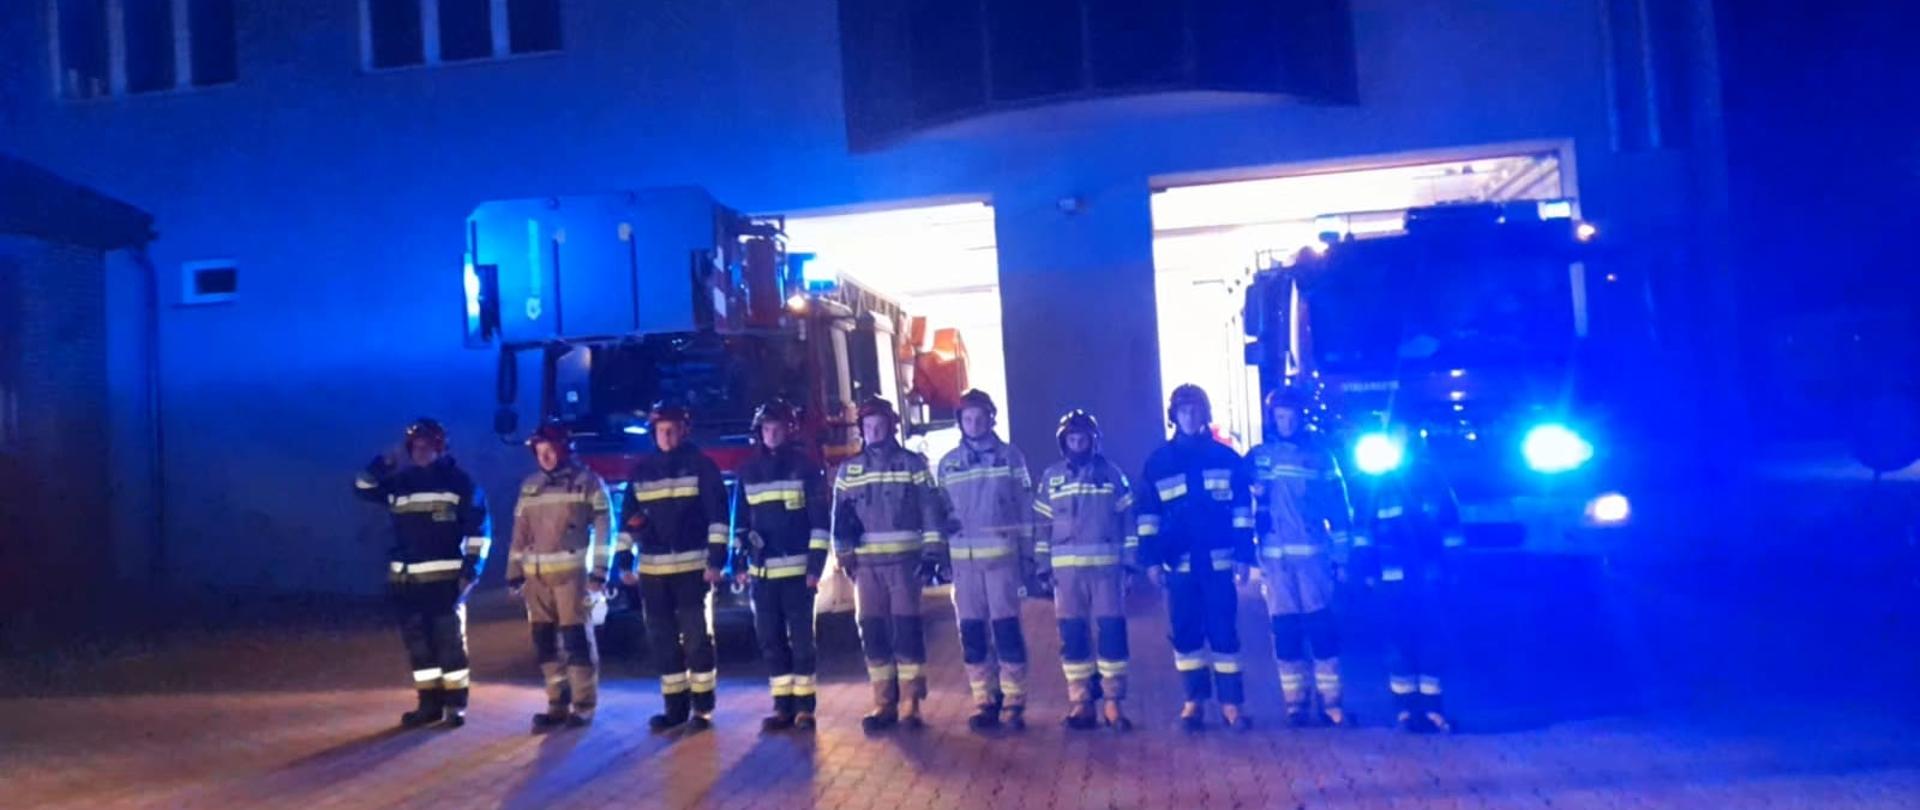 Na zdjęciu widzimy strażaków z JRG Skarżysko-Kamienna, którzy poprzez oddanie honorów, oraz za pomocą salwy z sygnałów dźwiękowych i oświetleniowych oddają hołd zmarłym tragicznie druhom OSP Czernikowo.